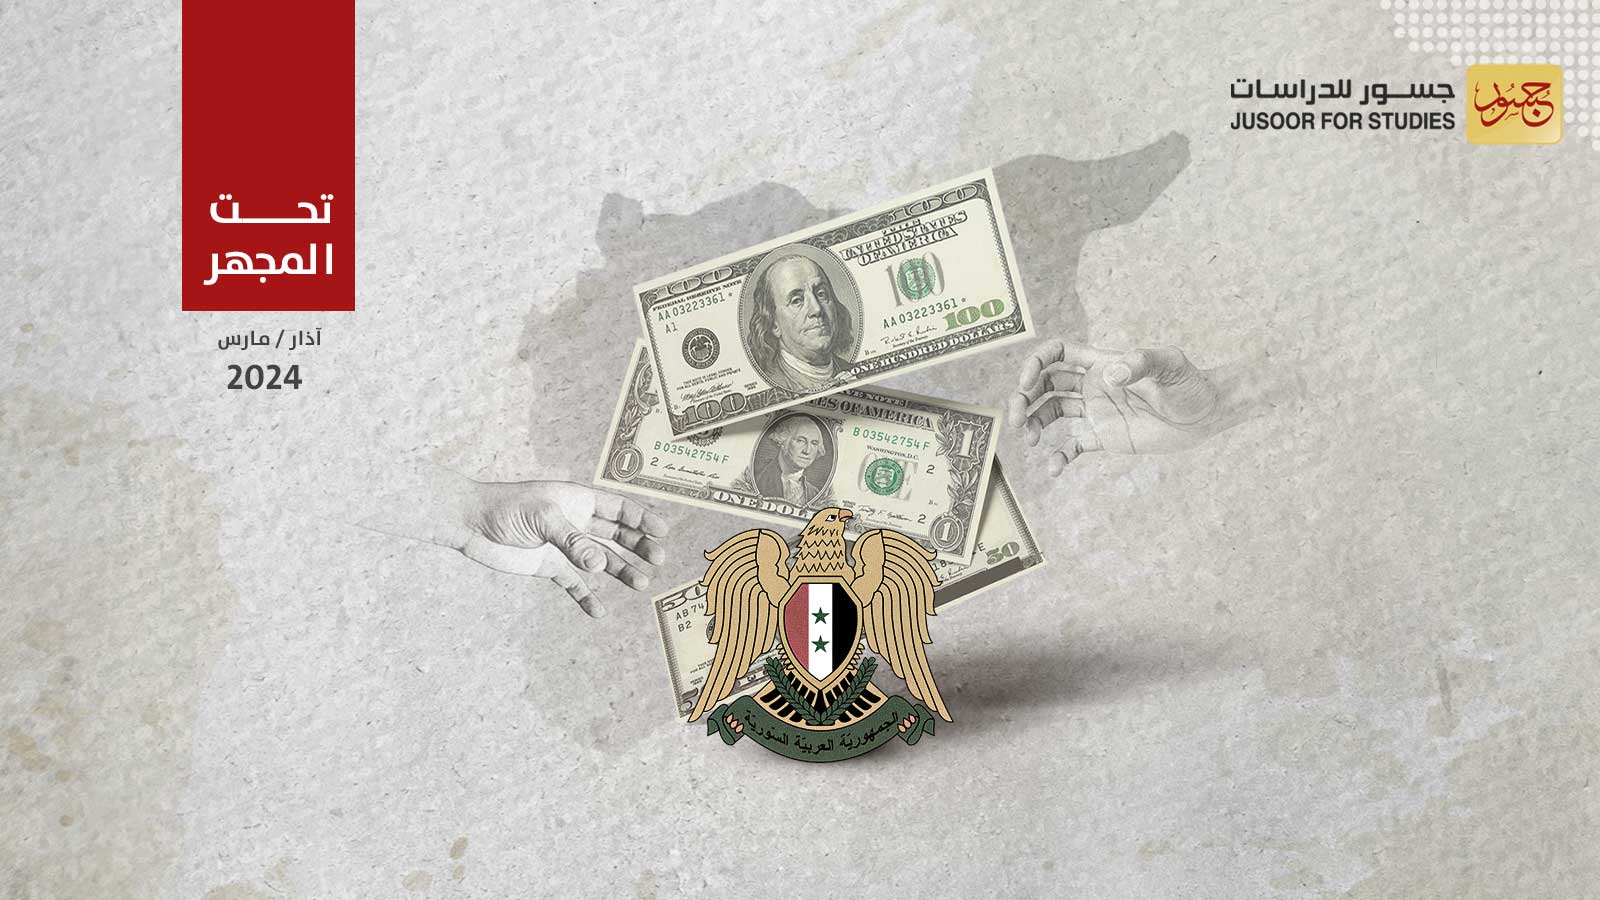 النظام السوري يتحايل للاستيلاء على أموال مساعدات المشاريع الصغيرة